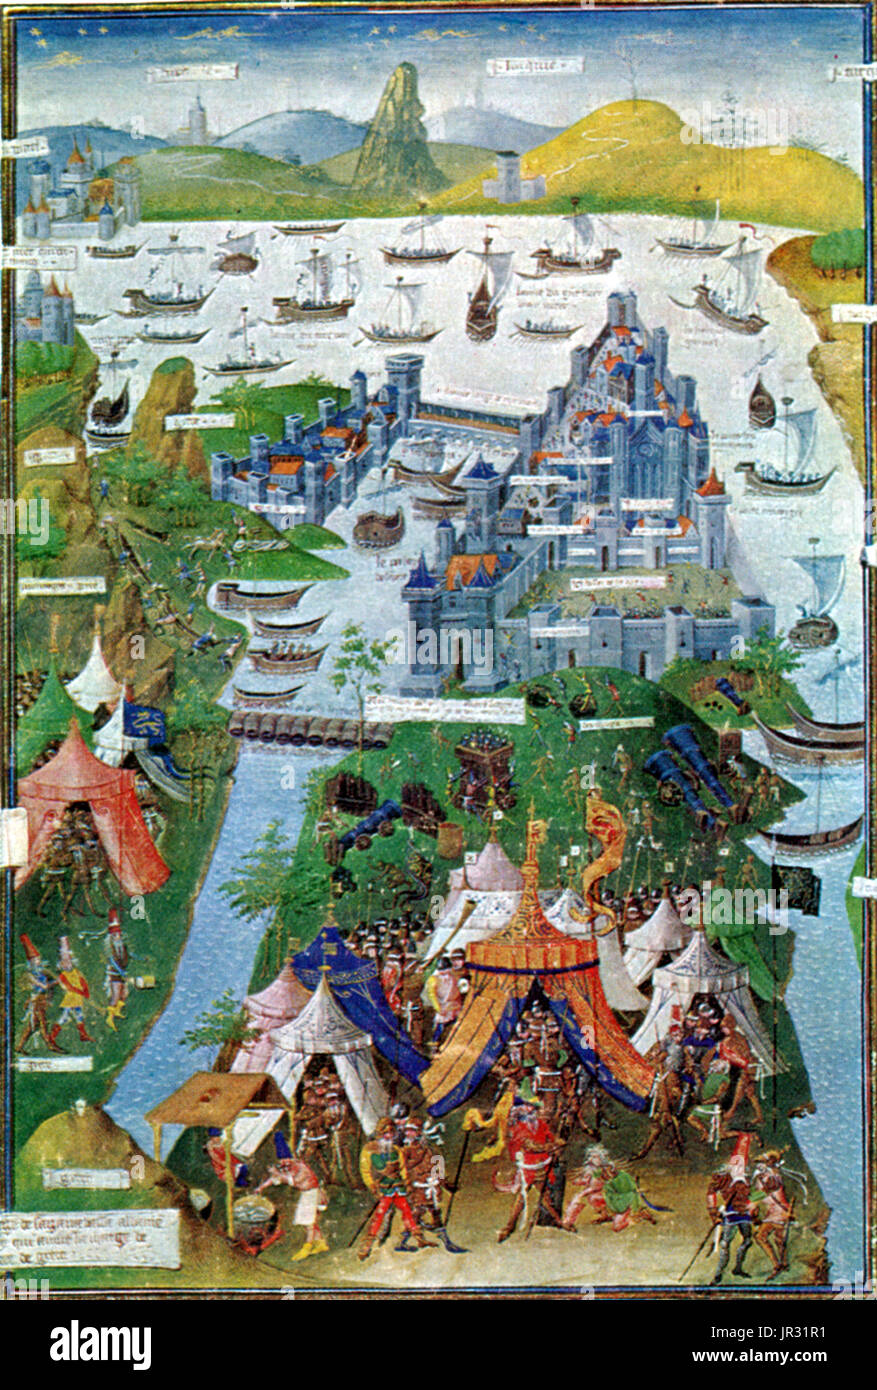 La chute de Constantinople a été la capture de la capitale de l'Empire byzantin par une armée d'invasion de l'Empire ottoman le 29 mai 1453. Les Ottomans étaient commandées par Mehmet le Conquérant, le septième sultan de l'Empire Ottoman, qui a vaincu une armée commandée par l'empereur byzantin Constantin XI paléologue. La conquête de Constantinople a suivi une 53 jours de siège qui avait commencé le 6 avril 1453. La prise de Constantinople a marqué la fin de l'Empire romain, un empire qui a duré près de 1 500 ans. La conquête ottomane de Constantinople a également porté un énorme coup à Chri Banque D'Images